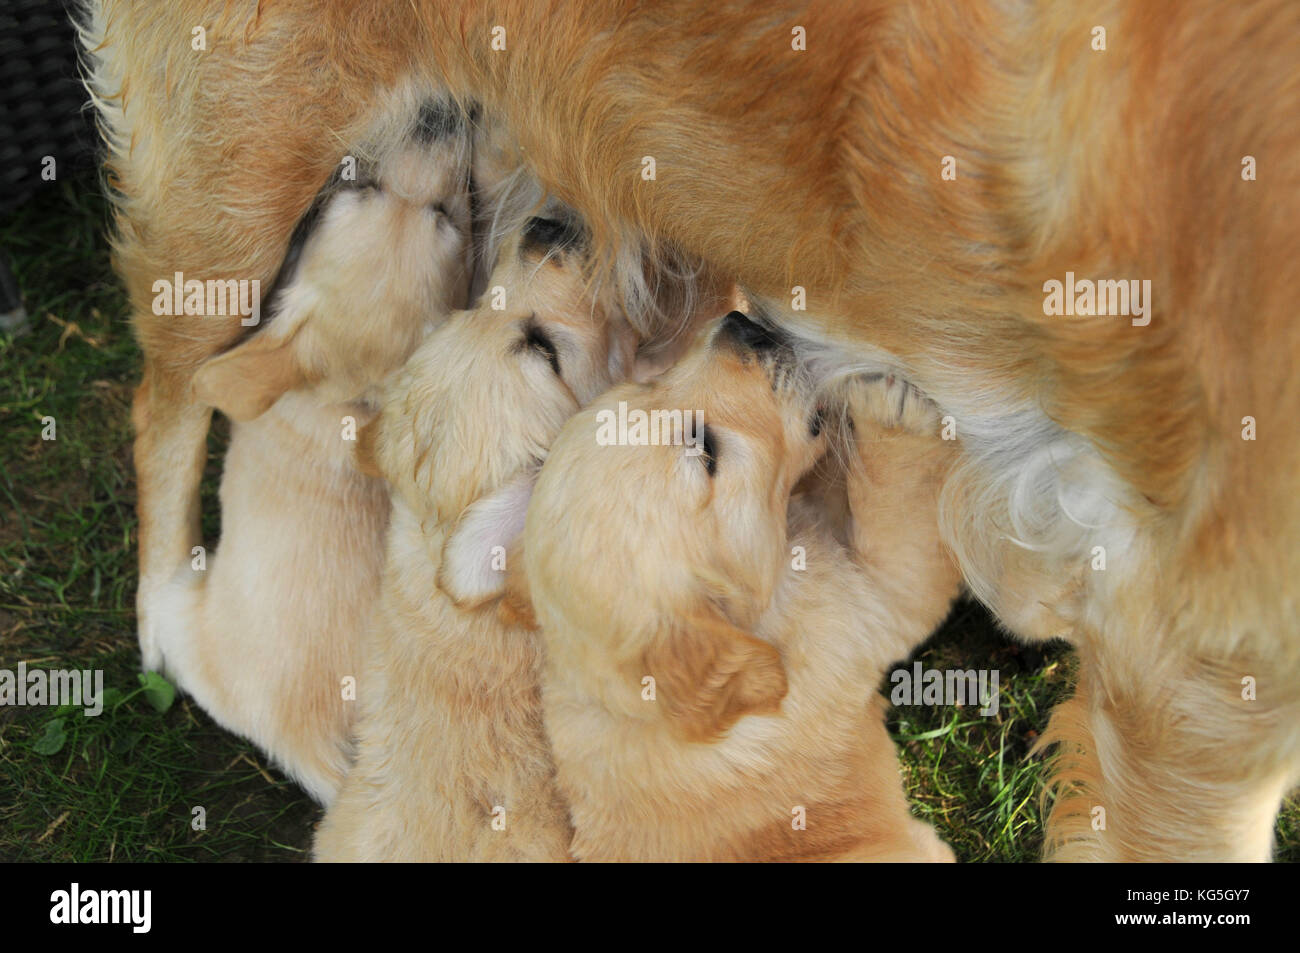 Golden retriever nurses dog puppies in the garden Stock Photo